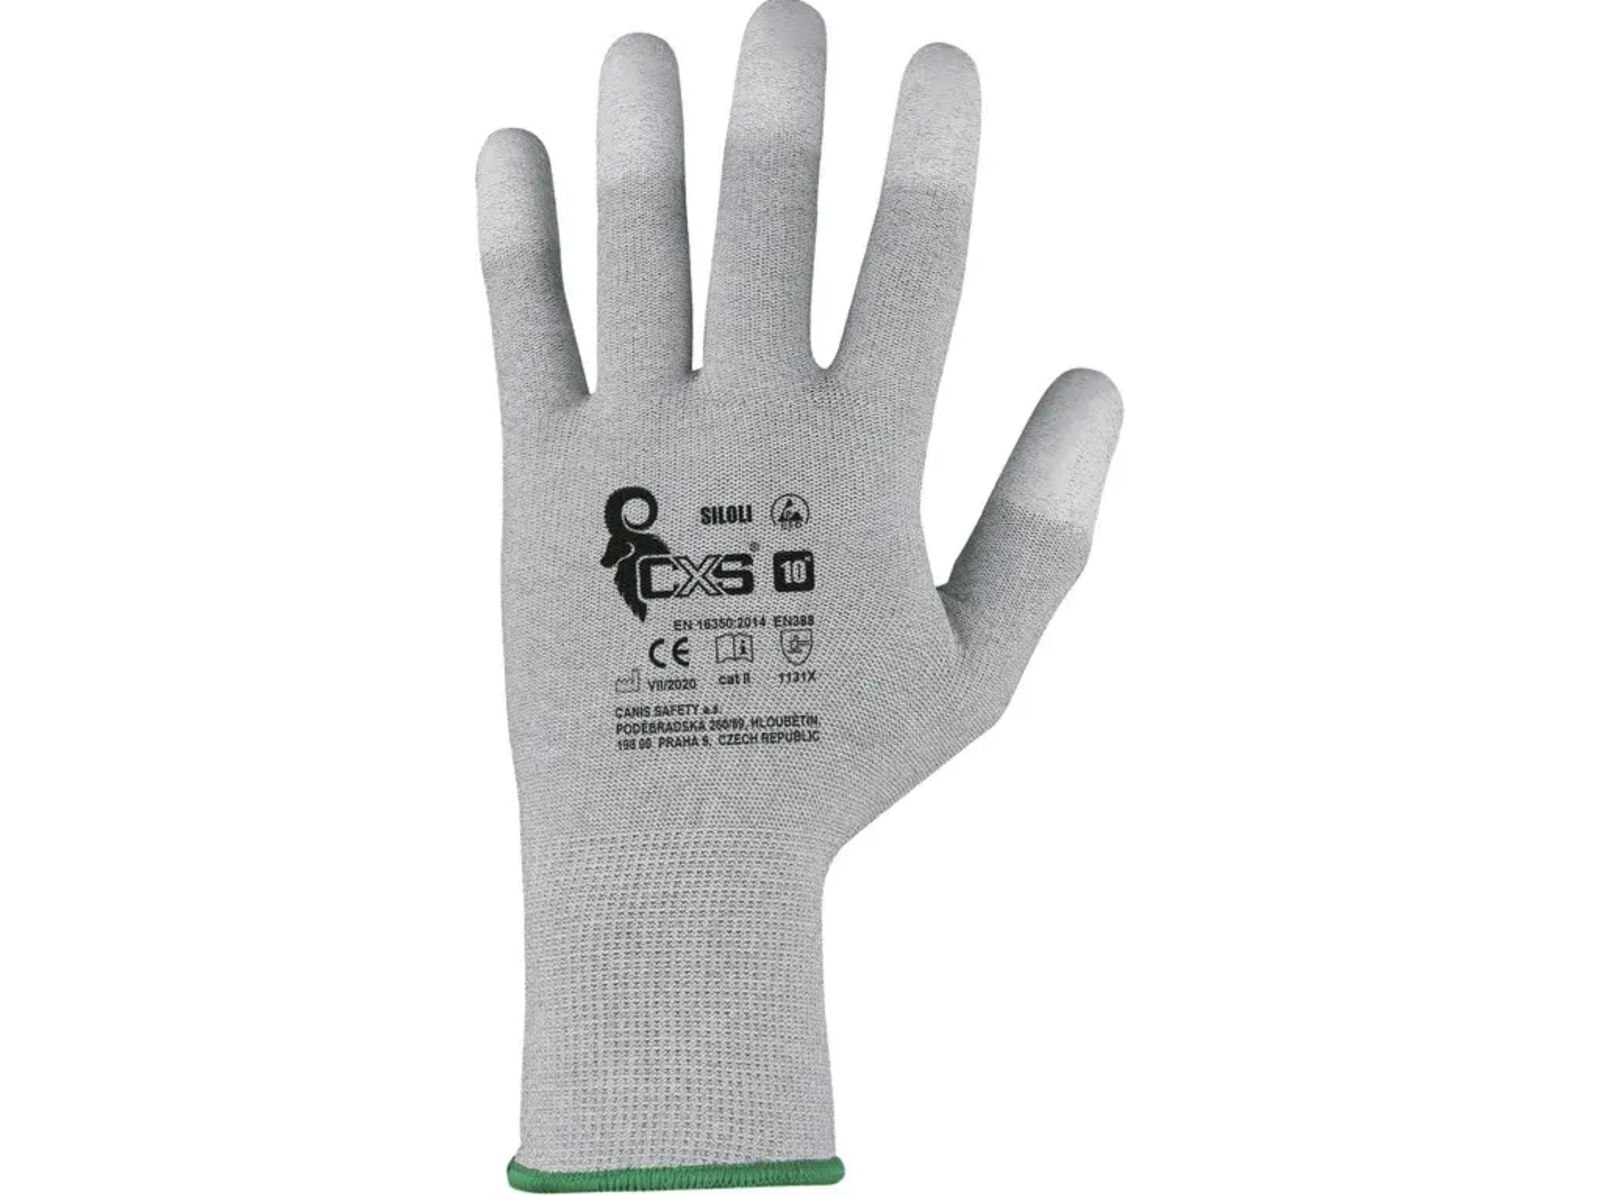 Povrstvené antistatické rukavice CXS Siloli - veľkosť: 9/L, farba: sivá